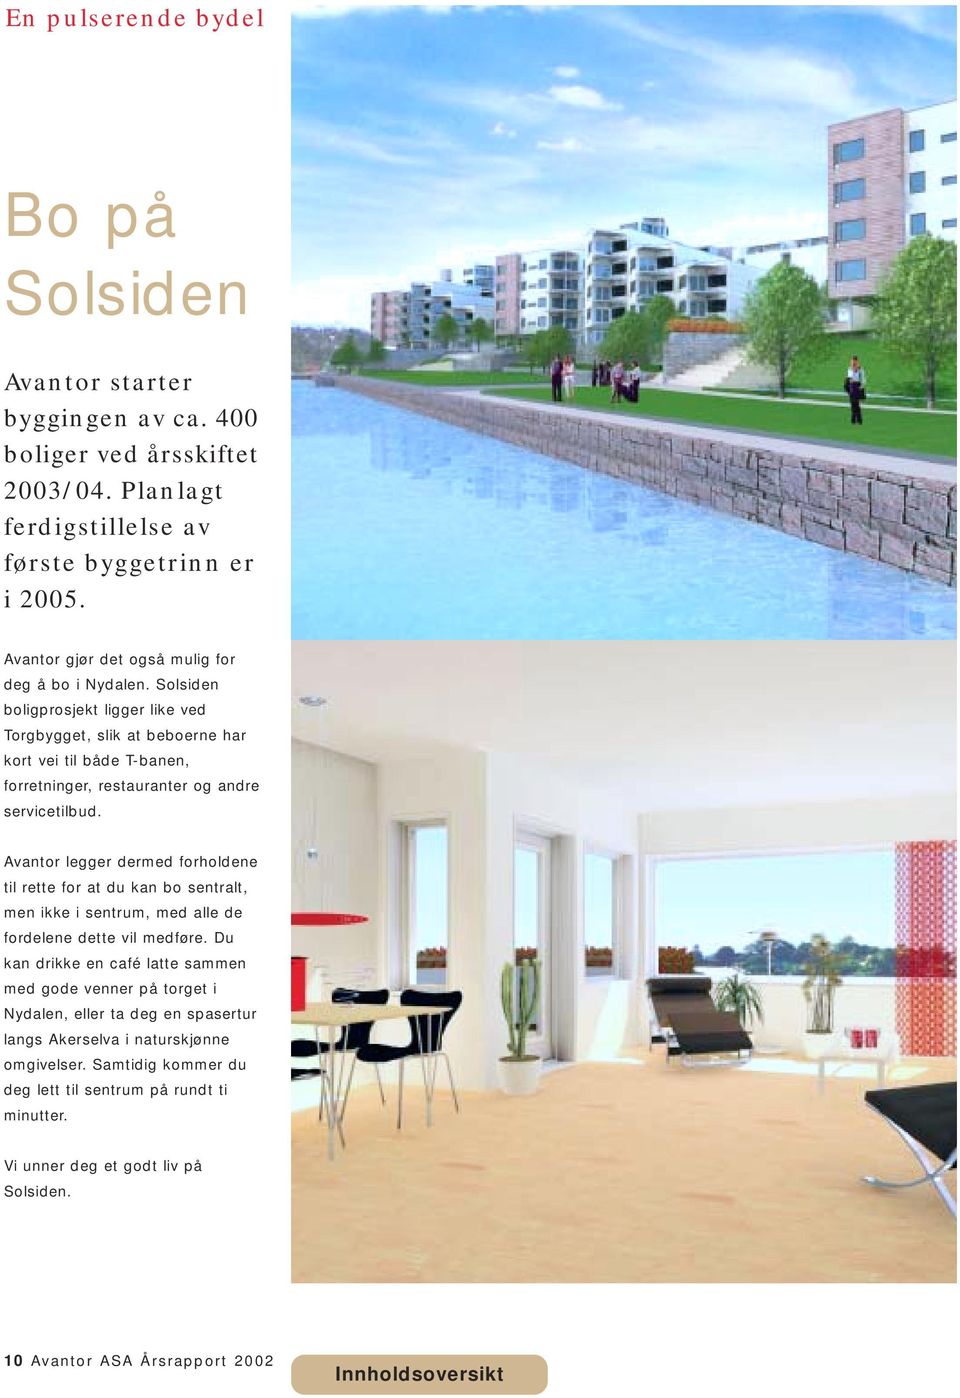 Solsiden boligprosjekt ligger like ved Torgbygget, slik at beboerne har kort vei til både T-banen, forretninger, restauranter og andre servicetilbud.